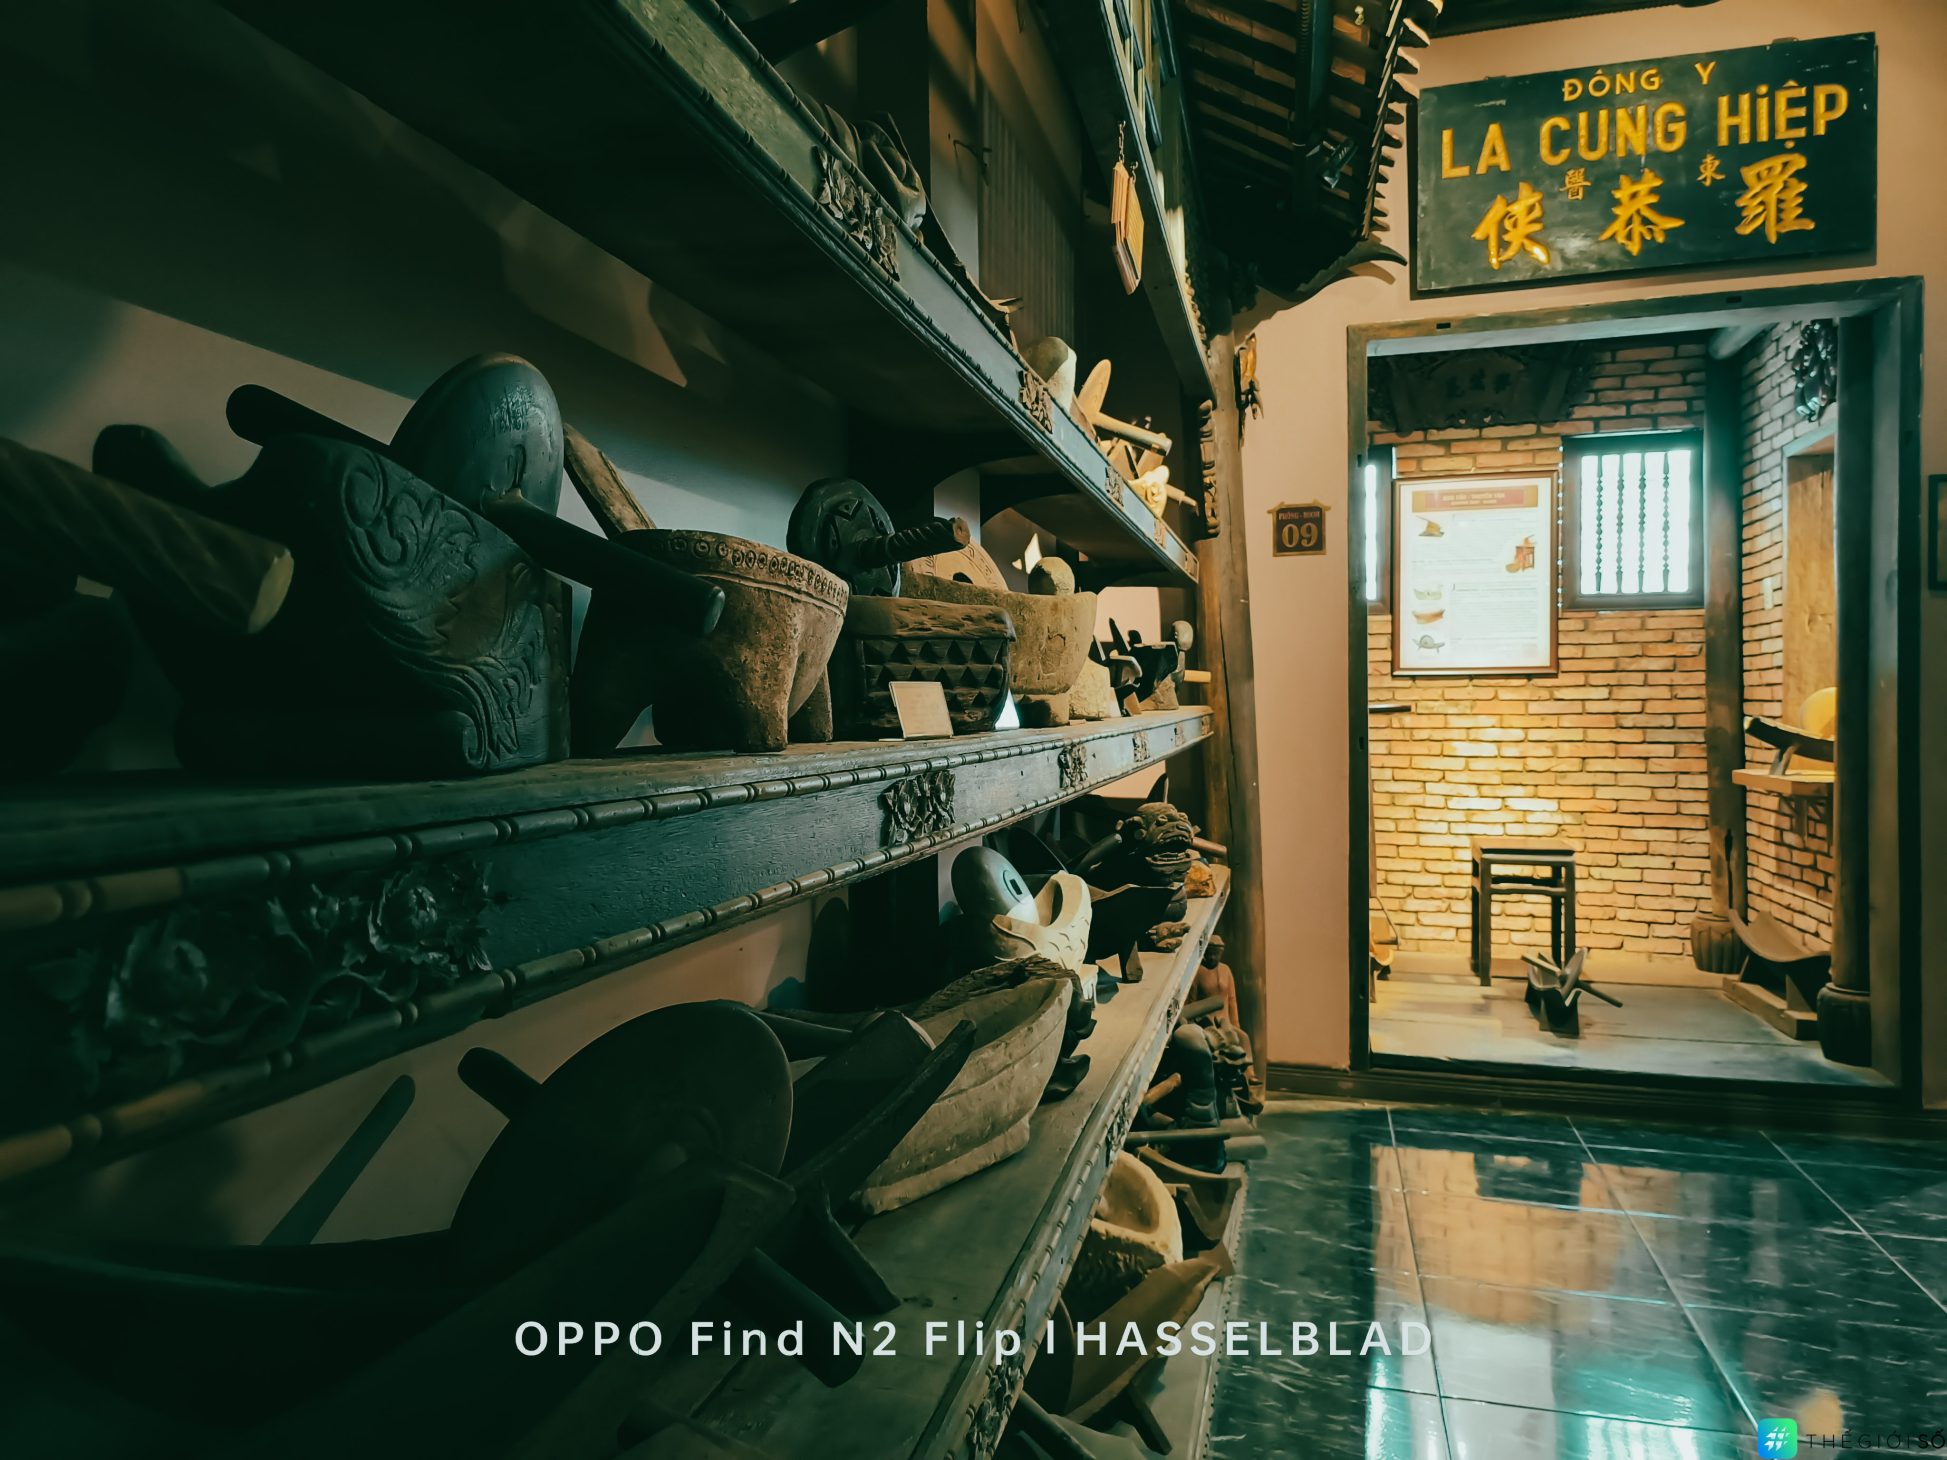 Oppo N2 Flip "choáng ngợp" trước Bảo tàng Y học cổ truyền - một  điểm du lịch độc đáo ít ai biết - Oppo N2 Flip 1 of 1 13